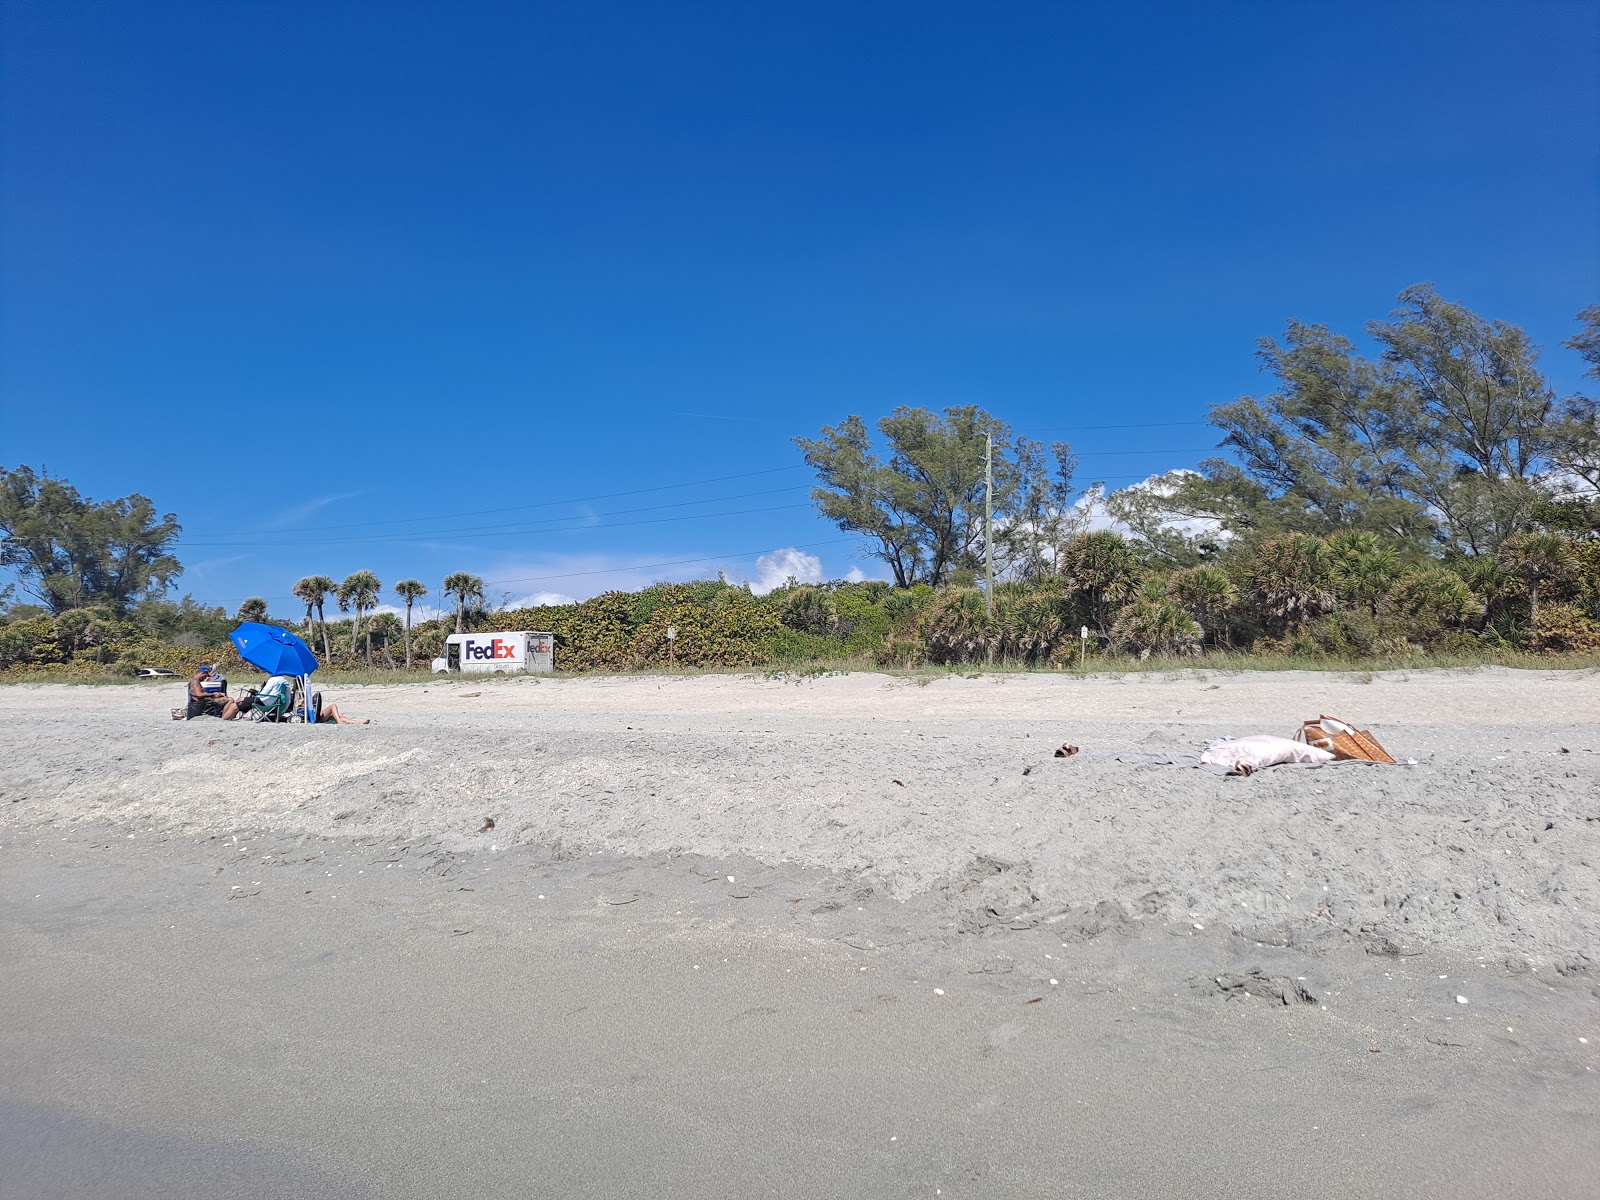 Photo de Blind Pass beach - endroit populaire parmi les connaisseurs de la détente